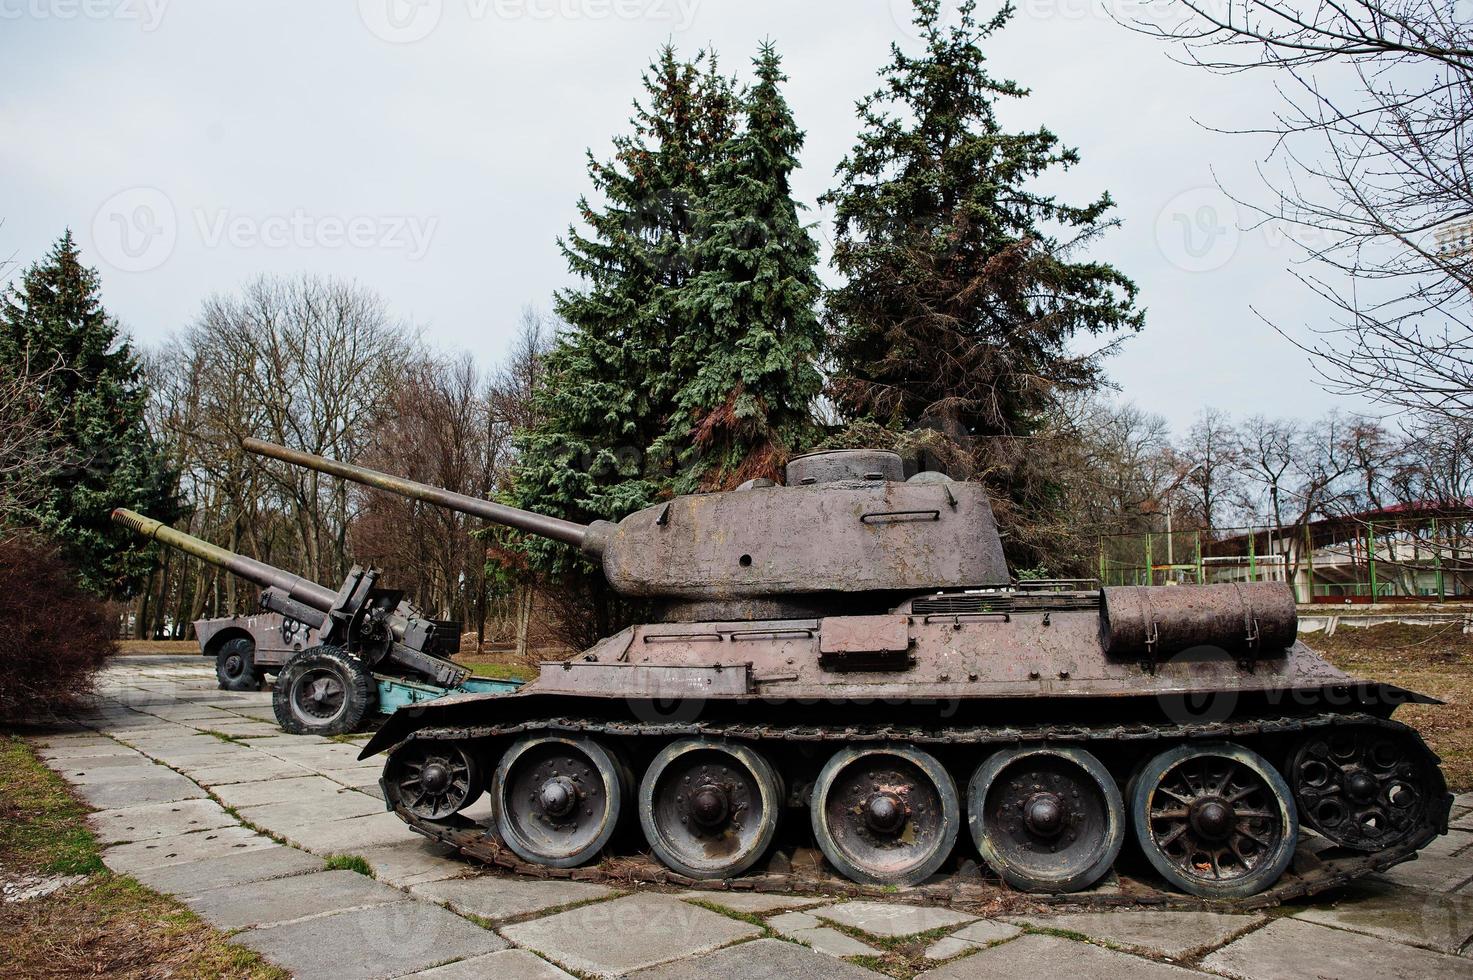 alter Vintage-Militärpanzer im Stadtsockel. foto